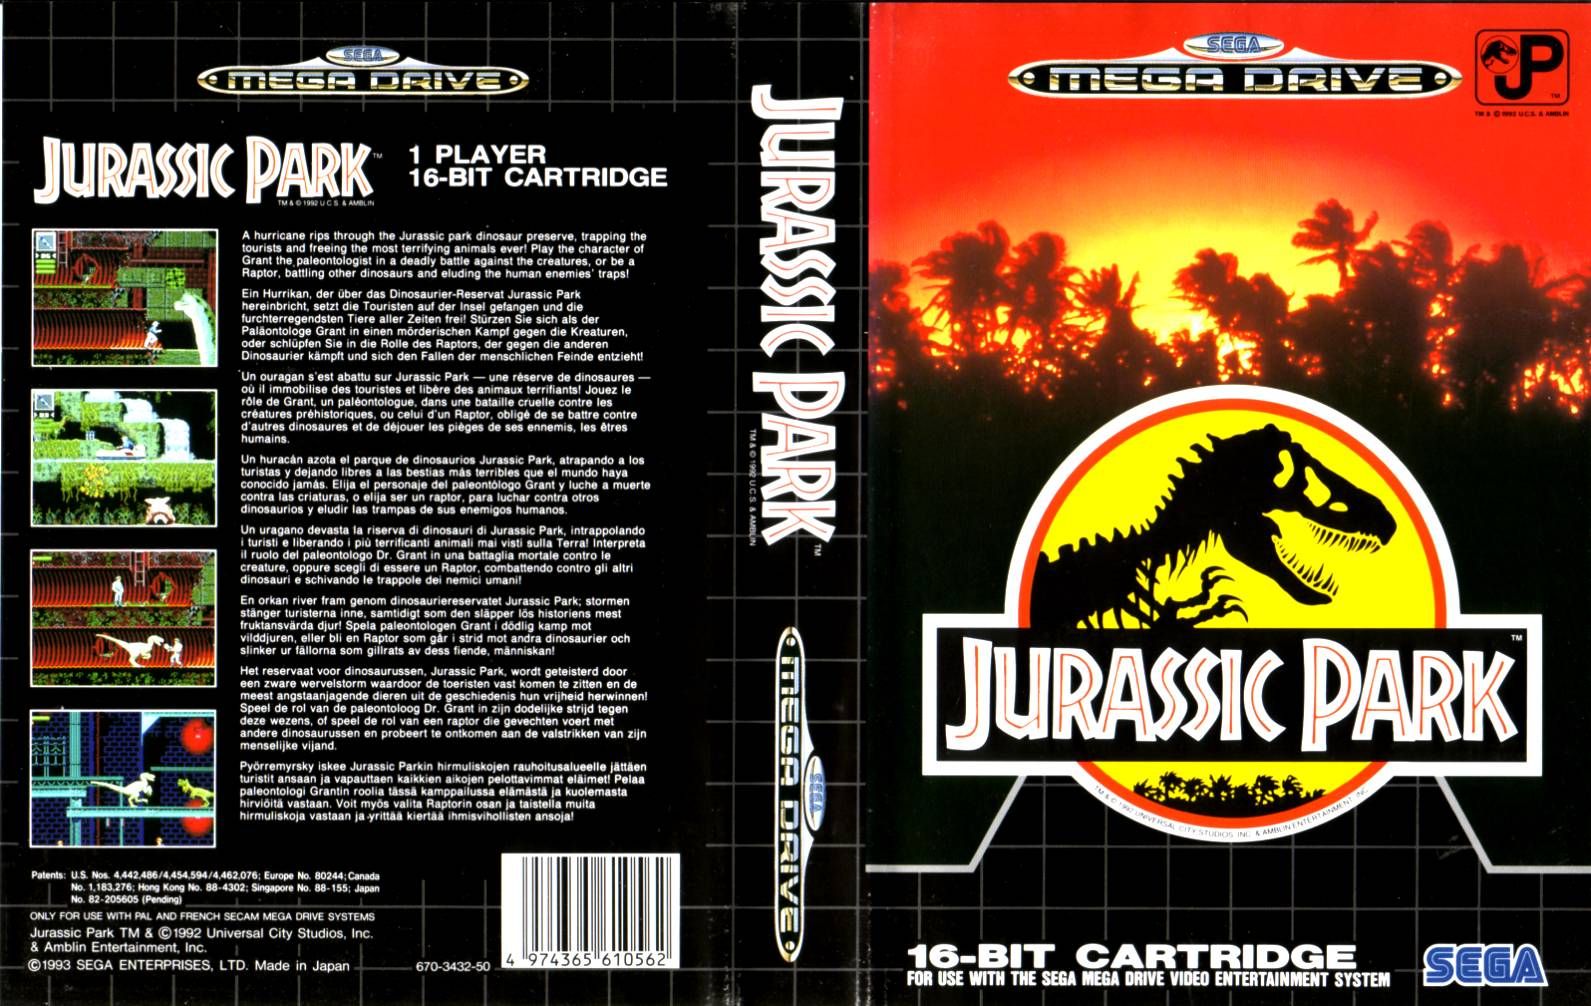 jaquette du jeu vidéo Jurassic Park